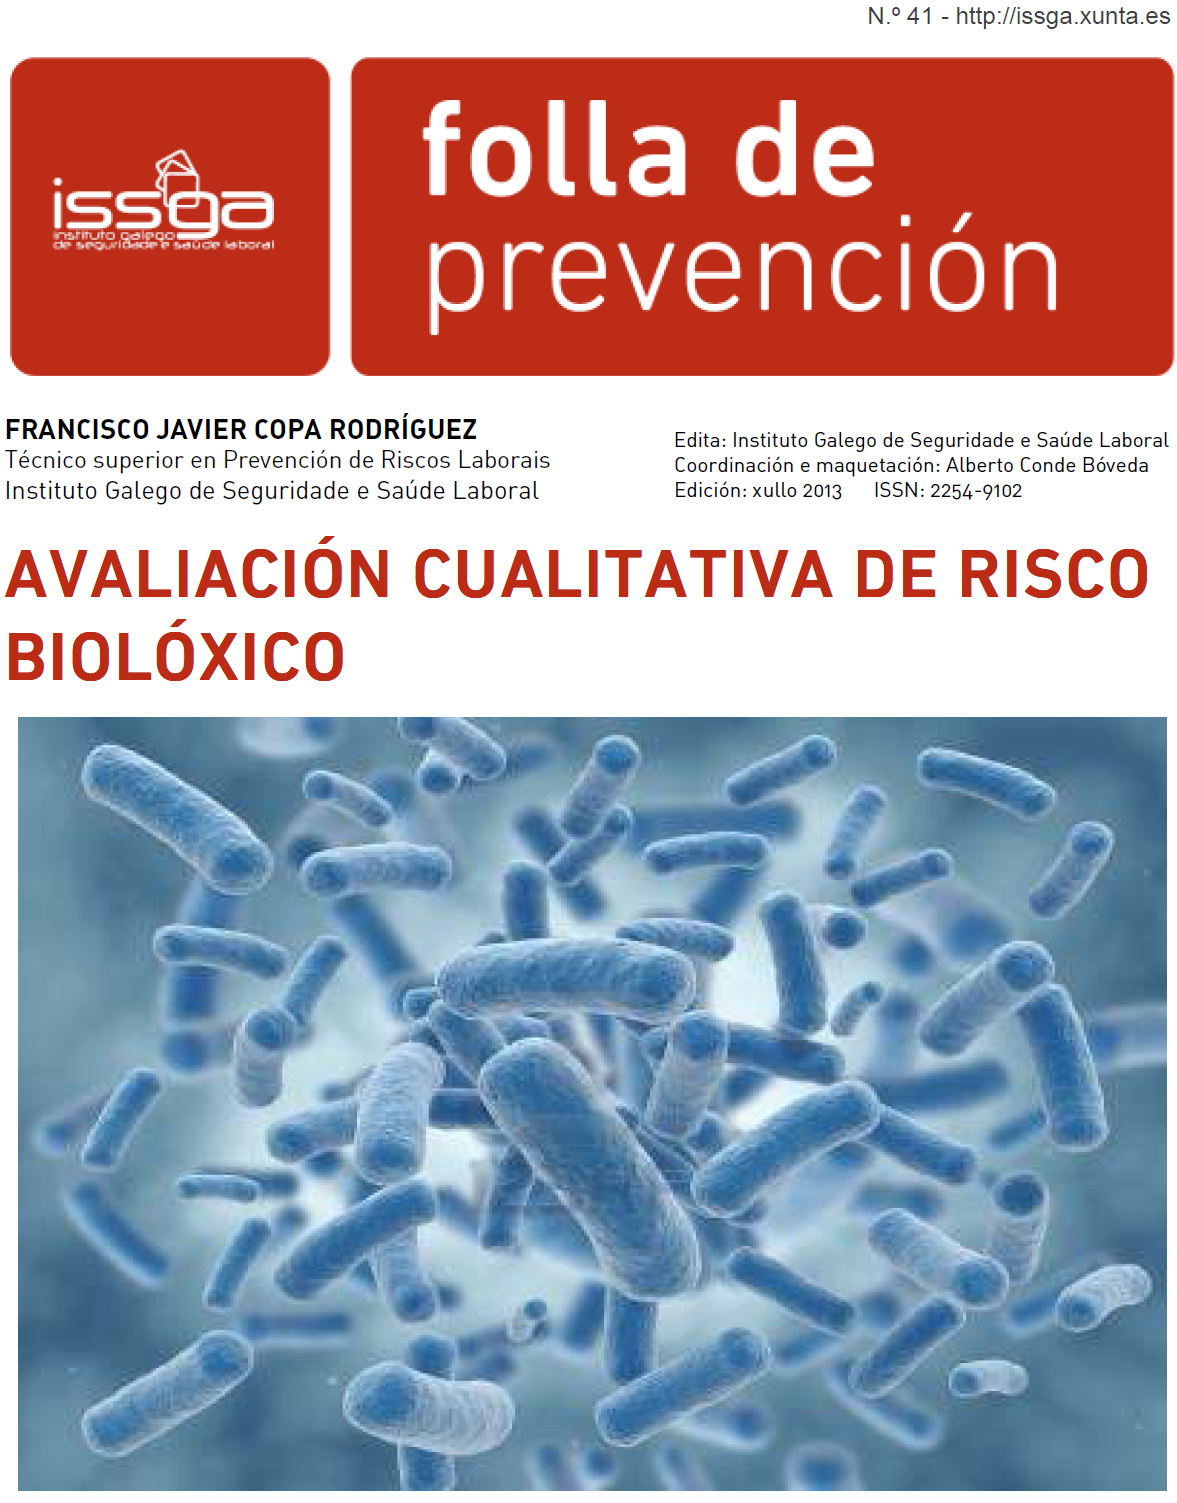 Folla de prevención nº 41 - Evaluacion cualitativa de riesgo biológico